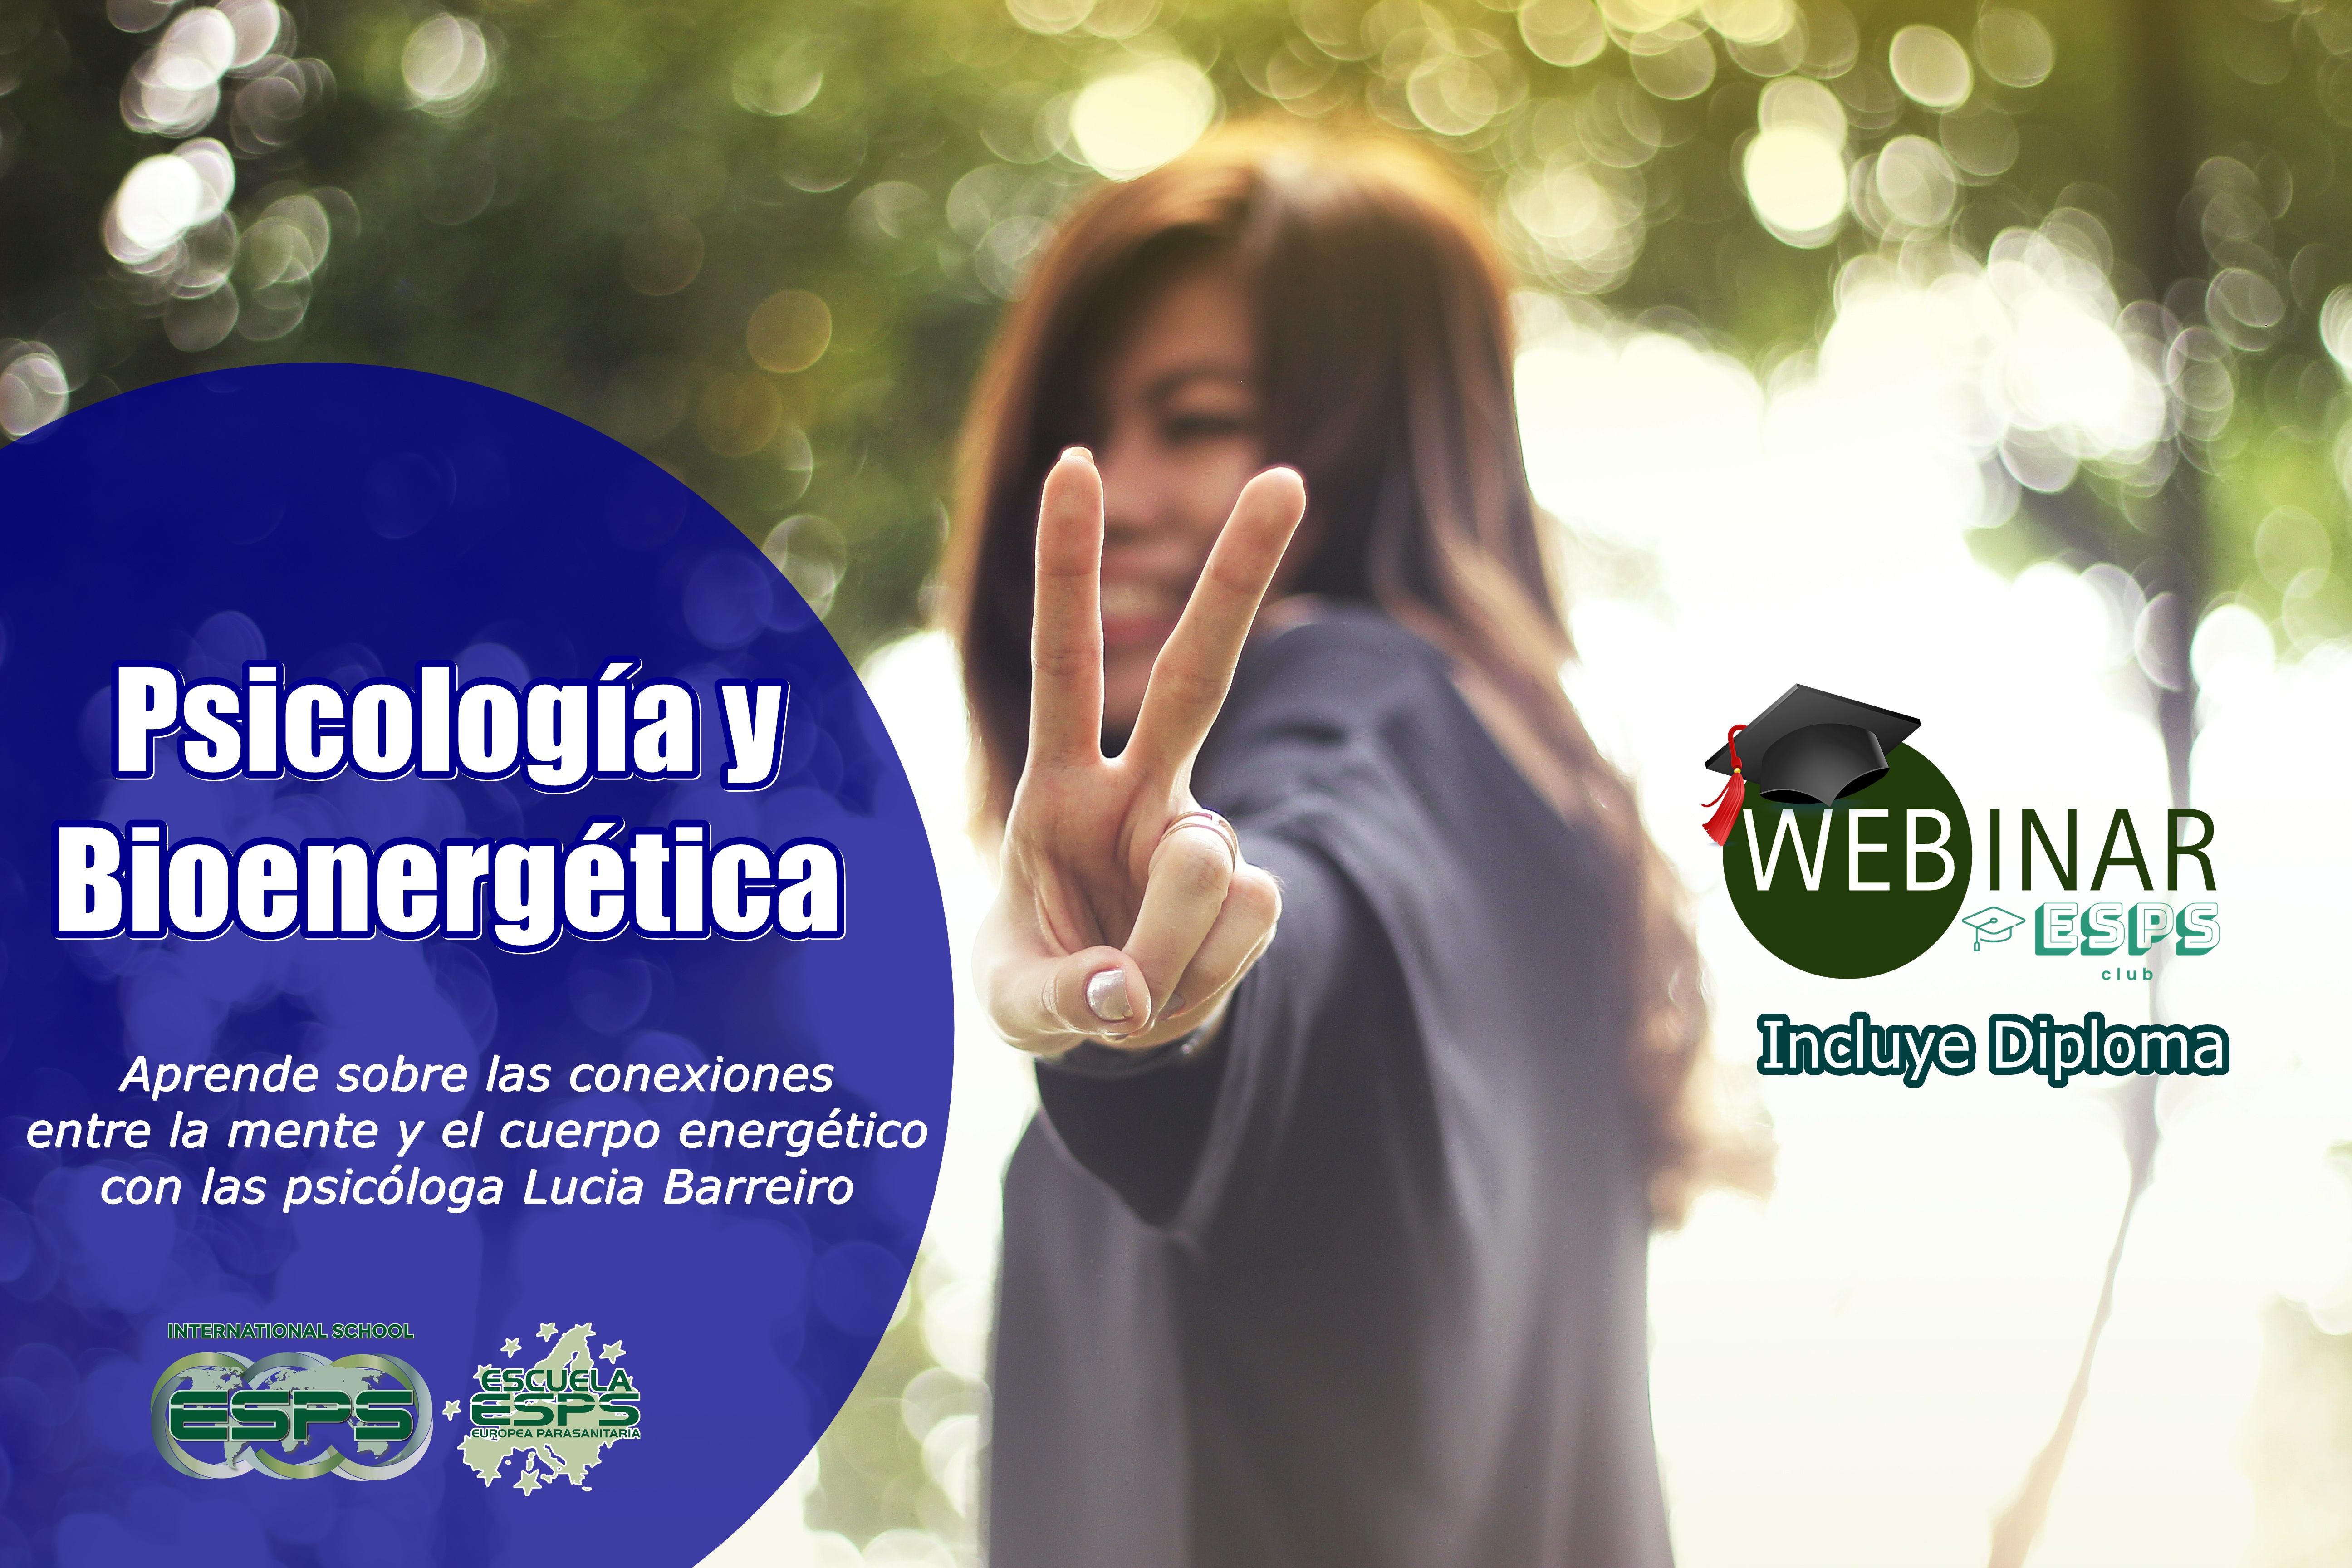 Webinar: Psicologia y bioenergética